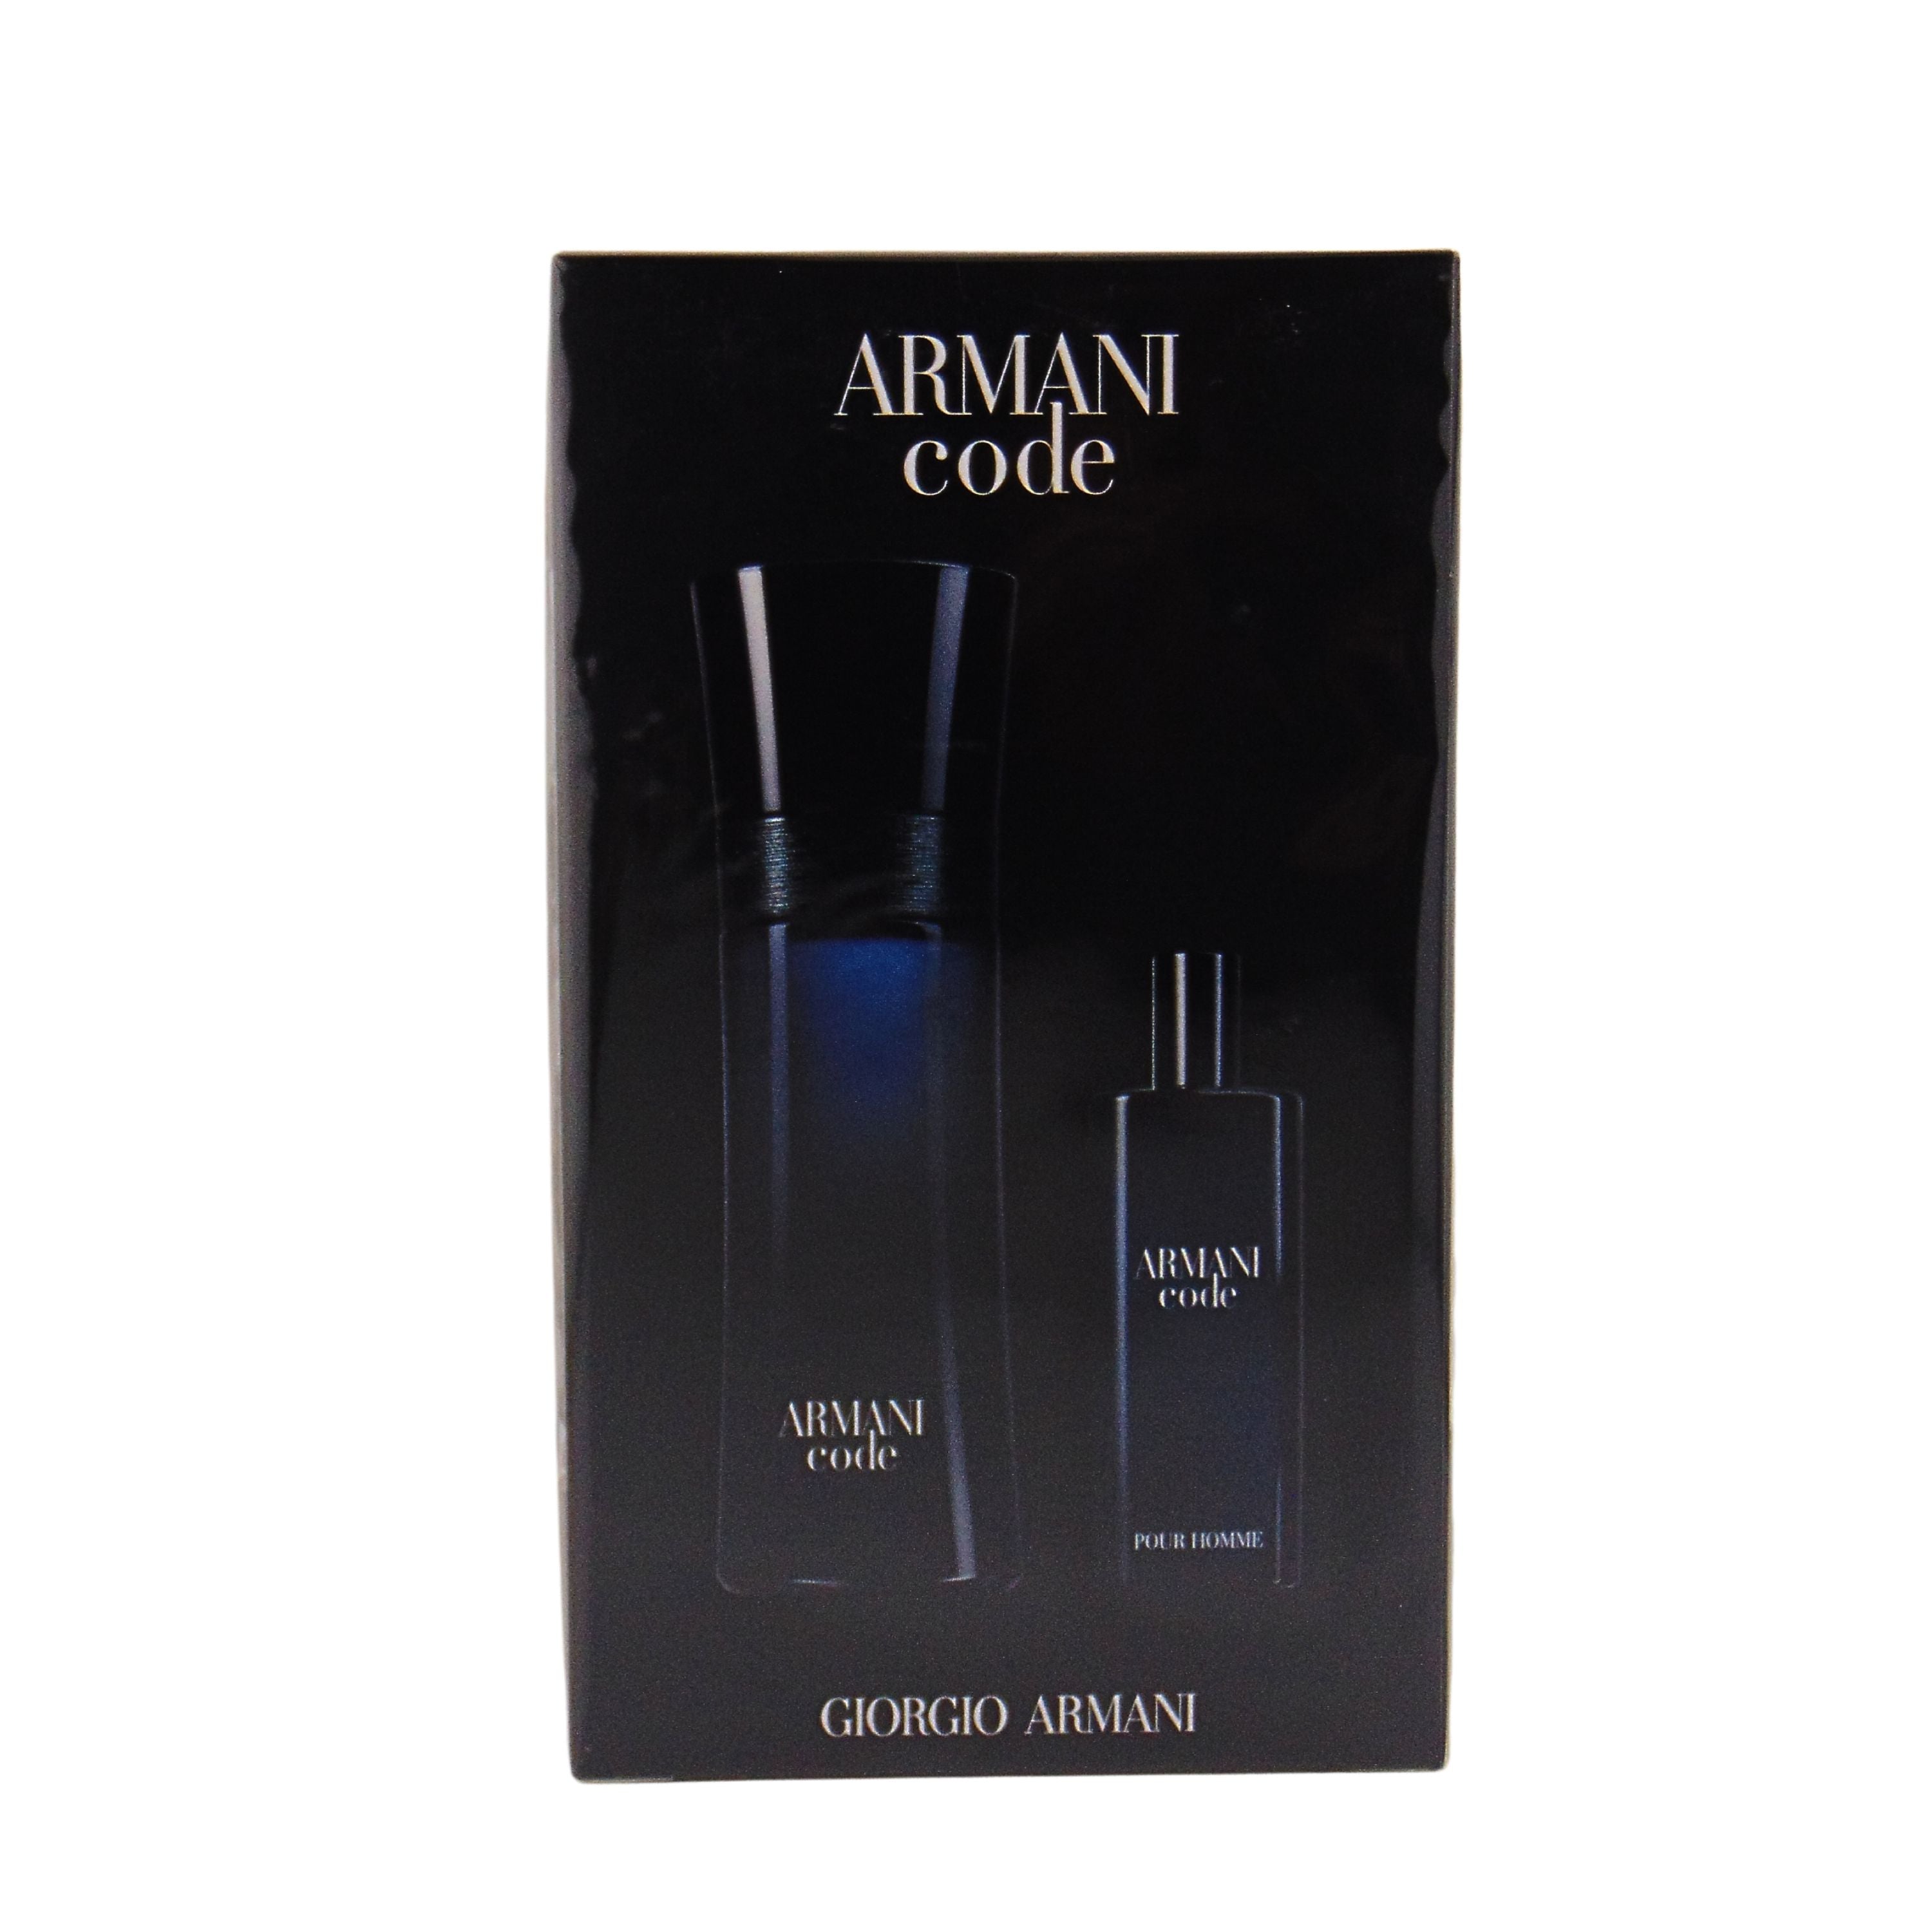 Giorgio Armani Armani Code Giftset for Men